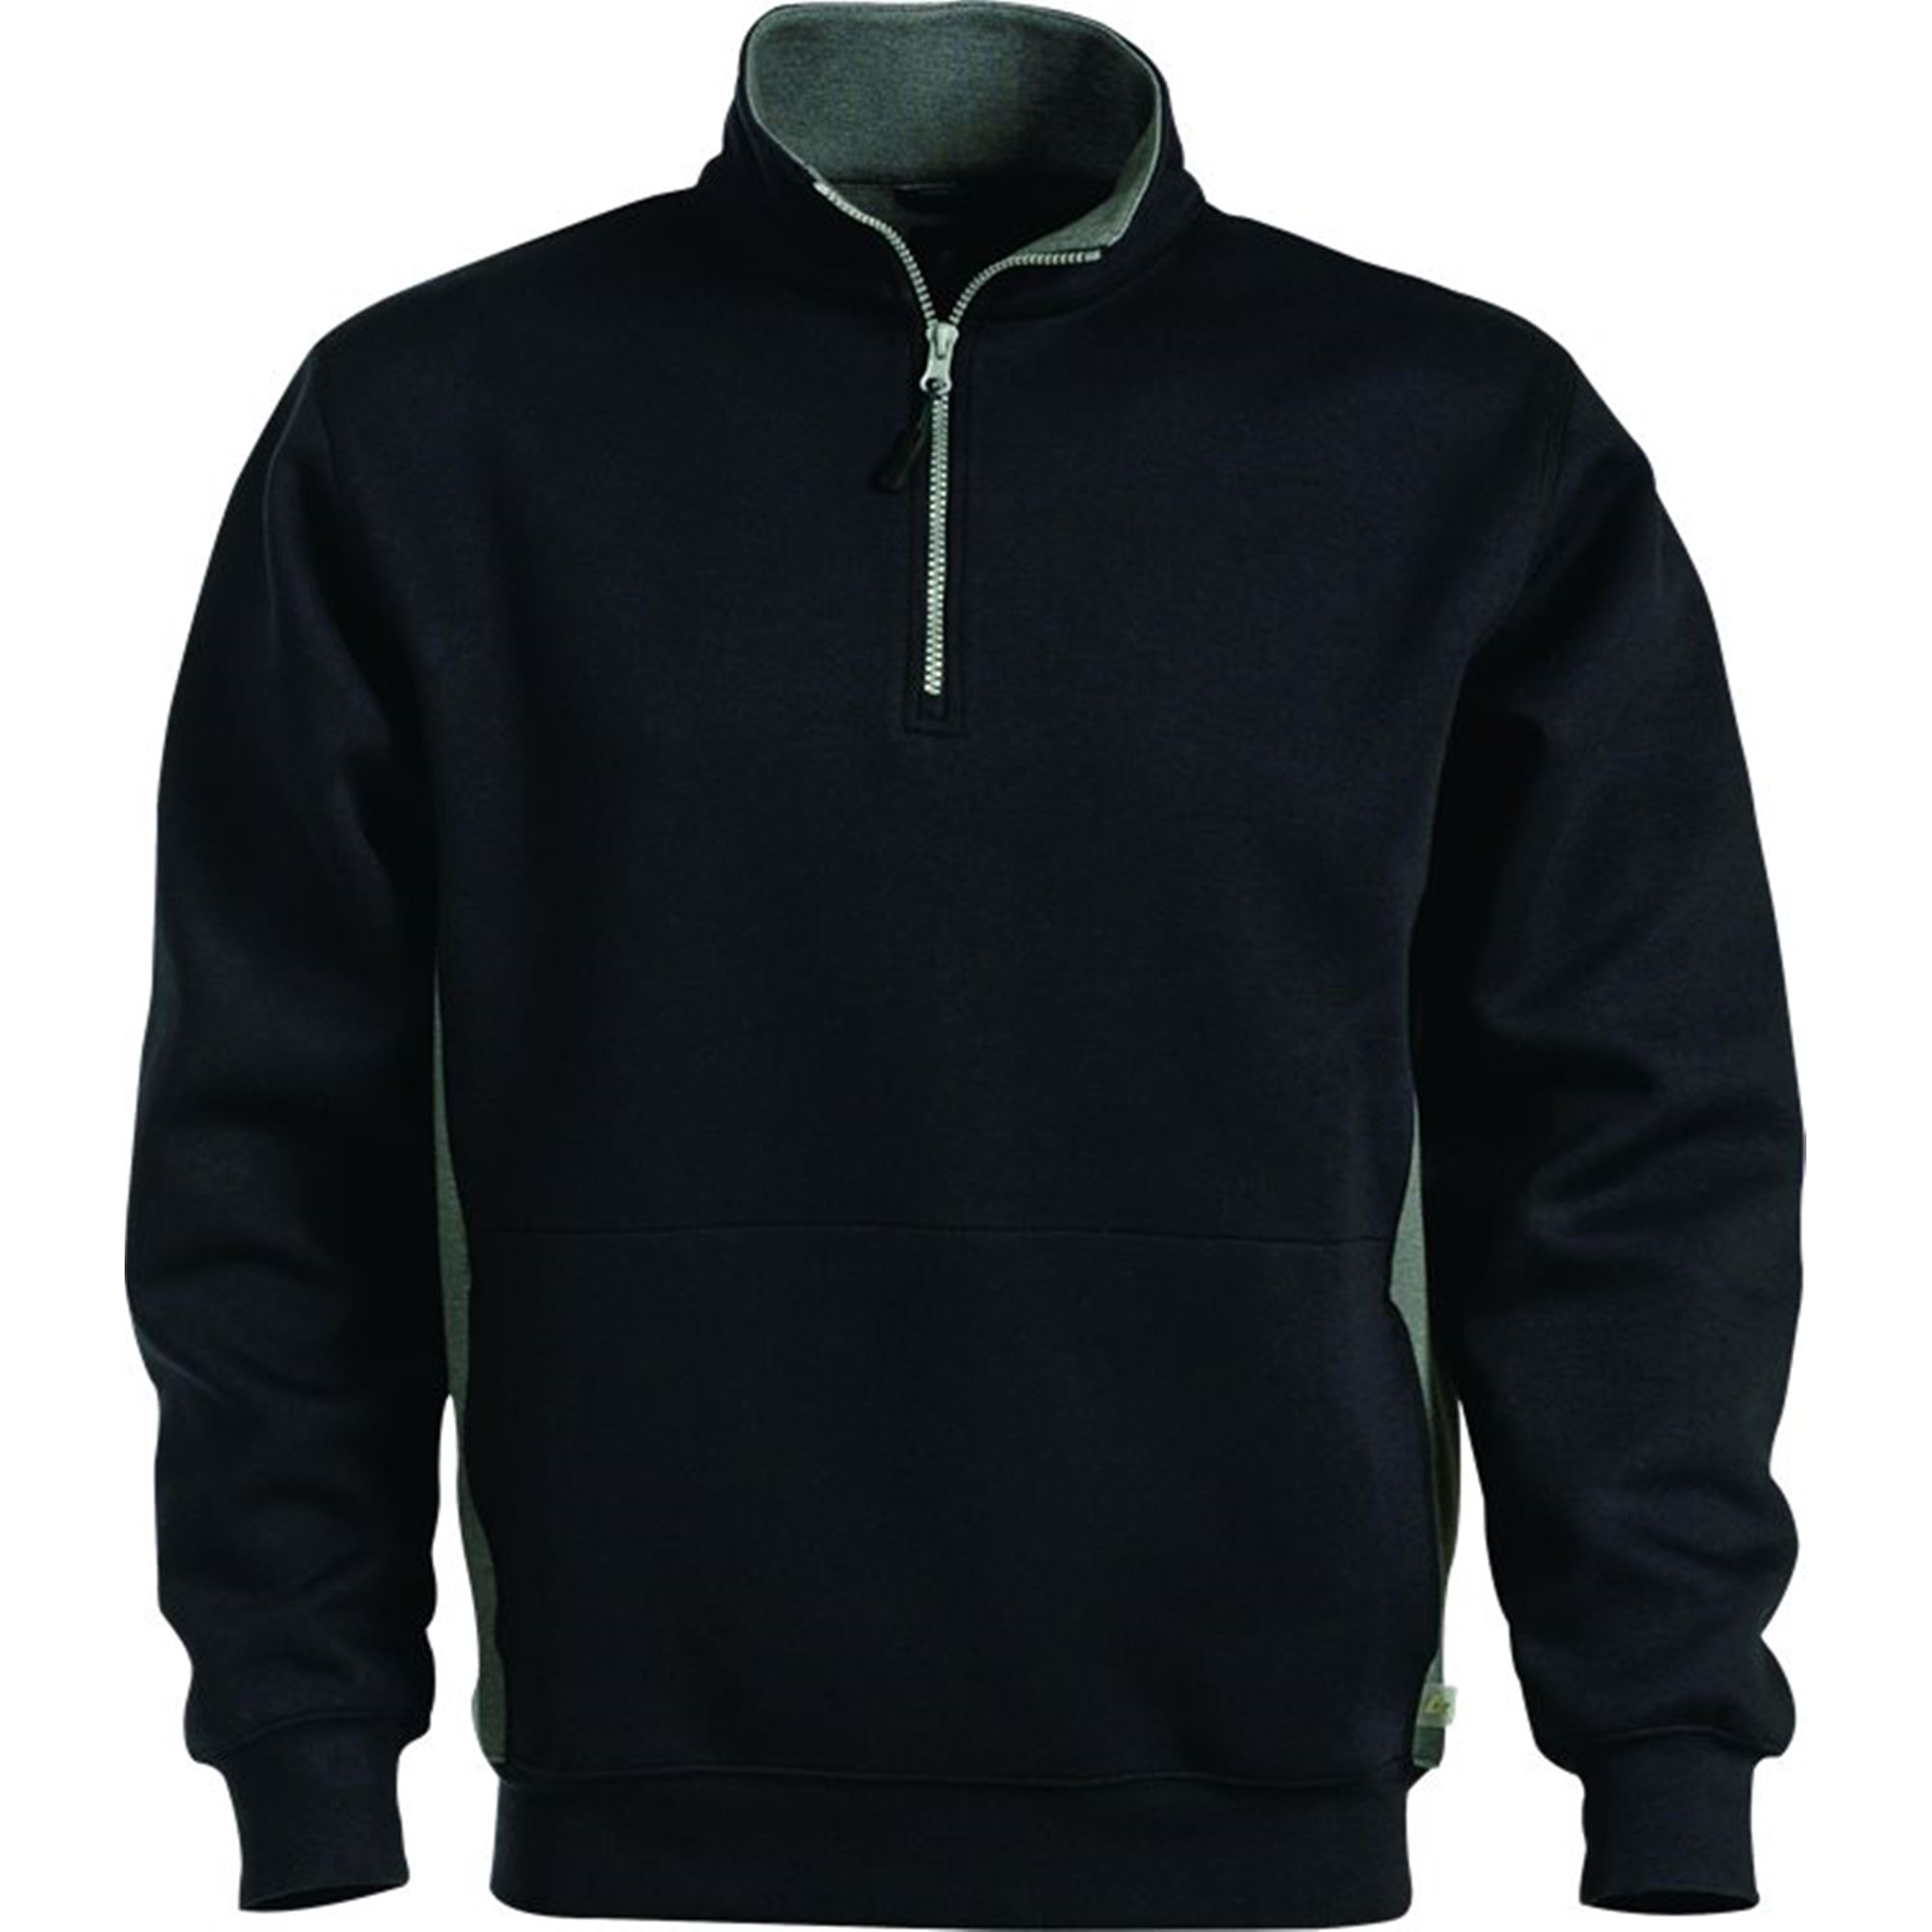 Acode Short Zip Sweatshirt 1705 by Fristads